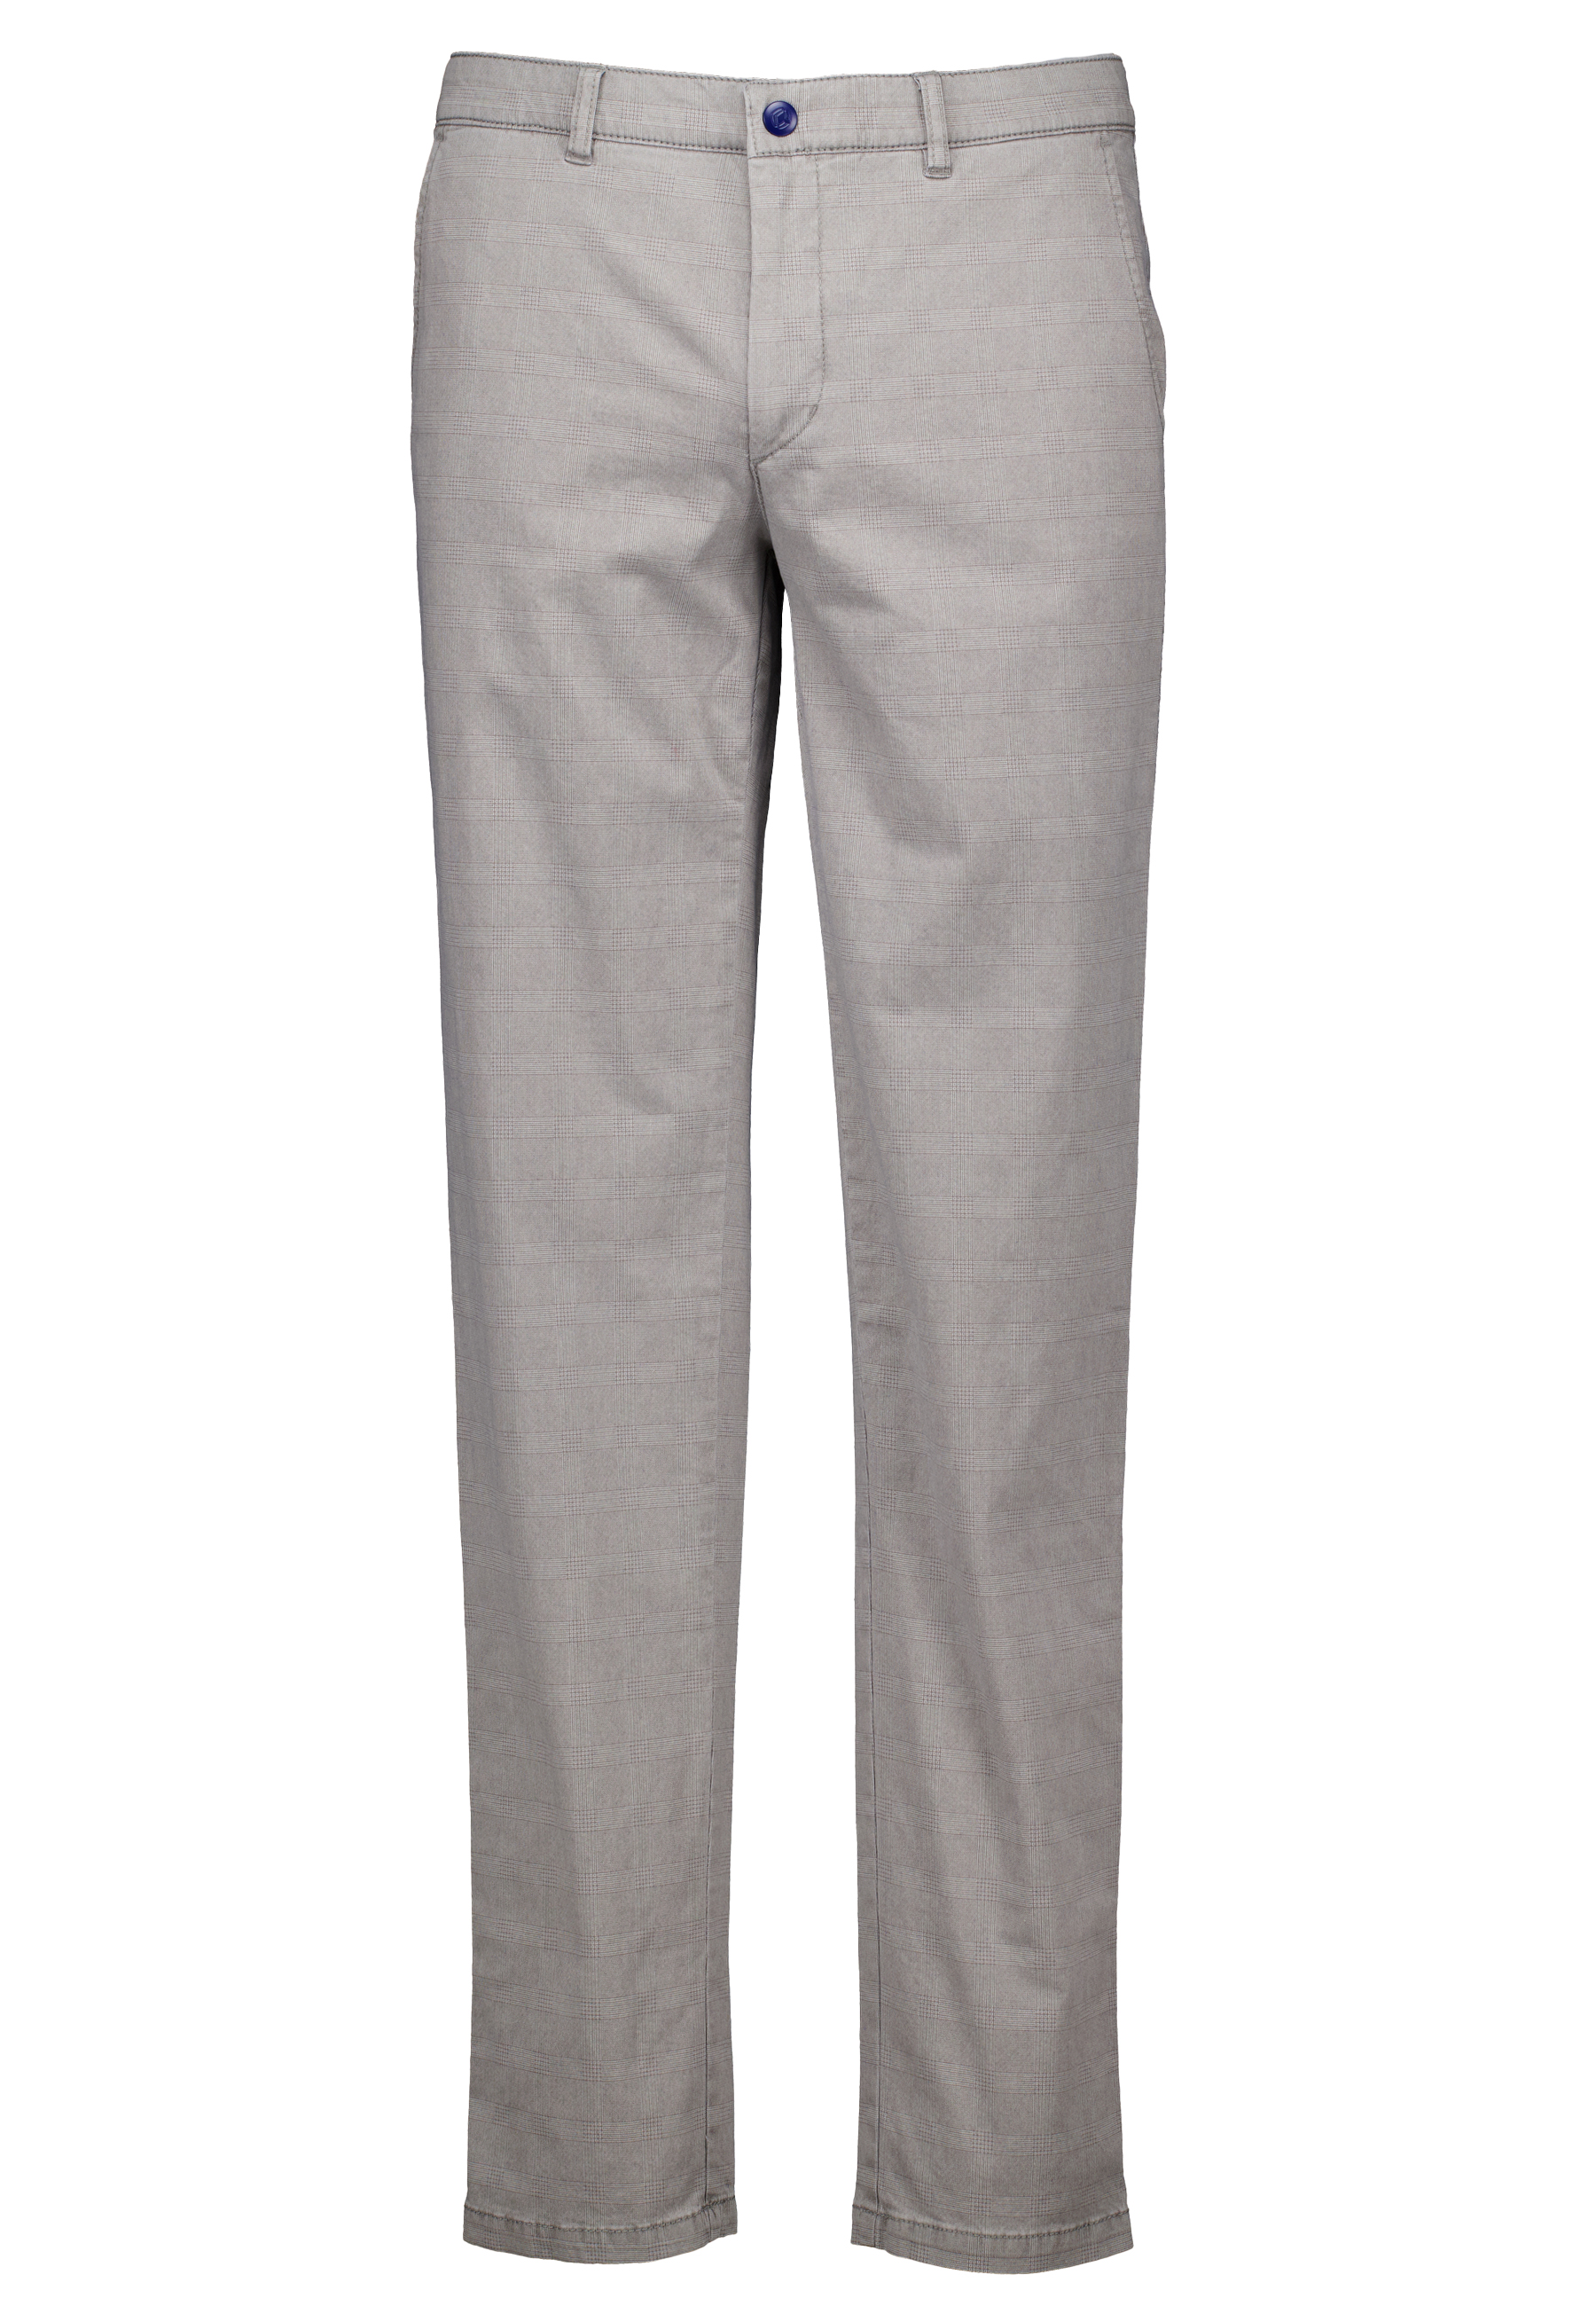 Com4 Broek Grijs Katoen maat 29 Modern chino pantalons grijs